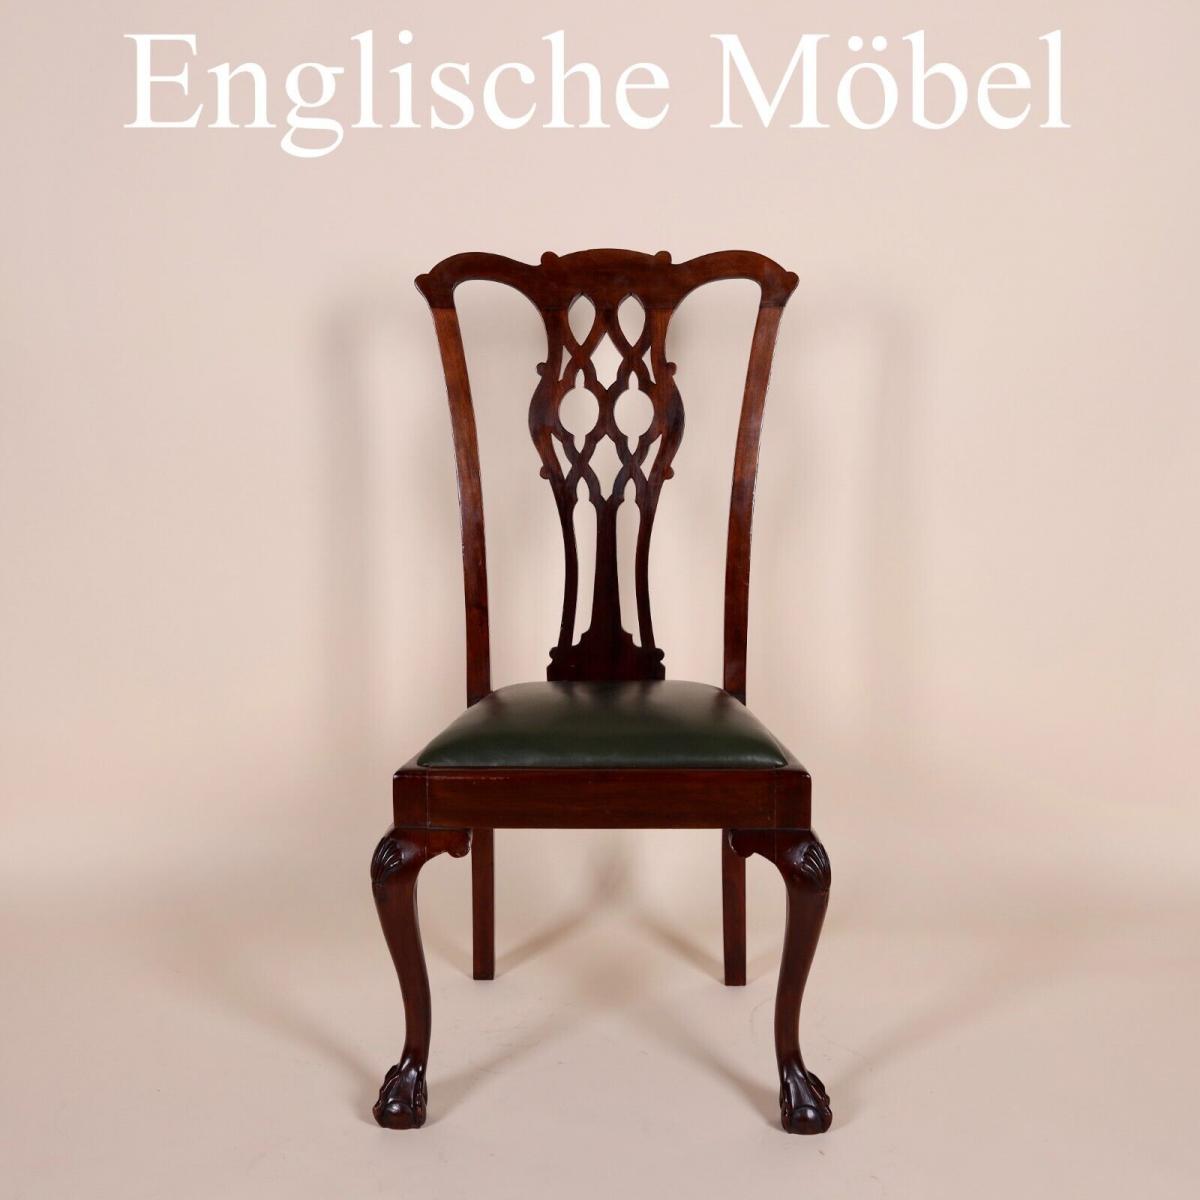 Englische M�bel Antik 4 original Edwardian Esszimmer Esstisch Stuhl St�hle Leder 0